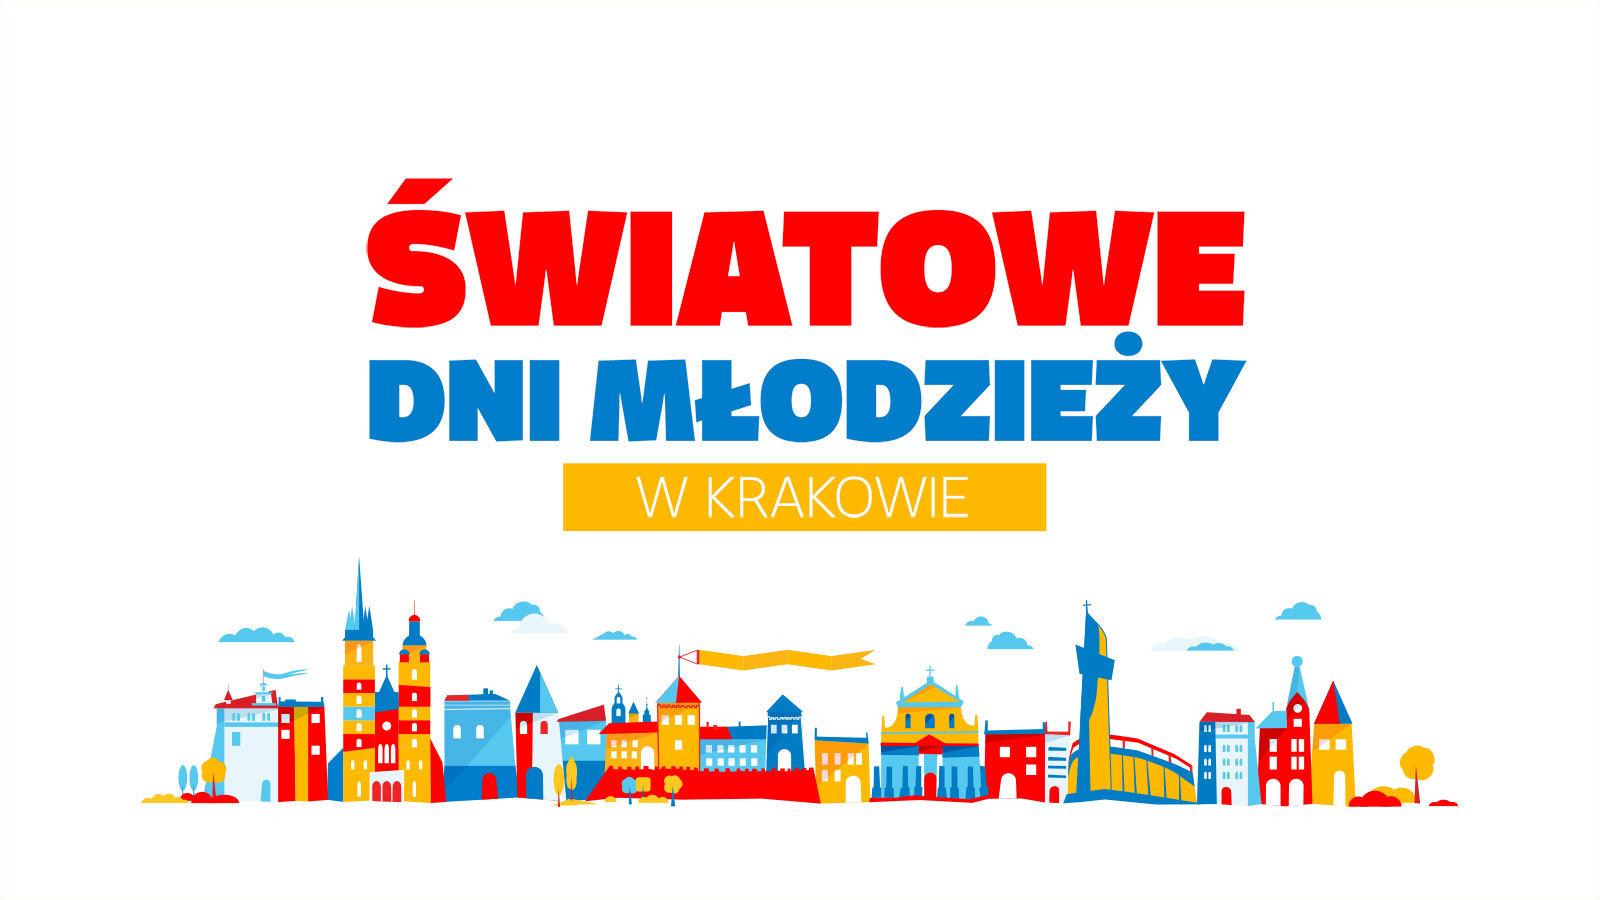 Польща безкоштовно видаватиме візи учасникам Світових днів молоді у Кракові